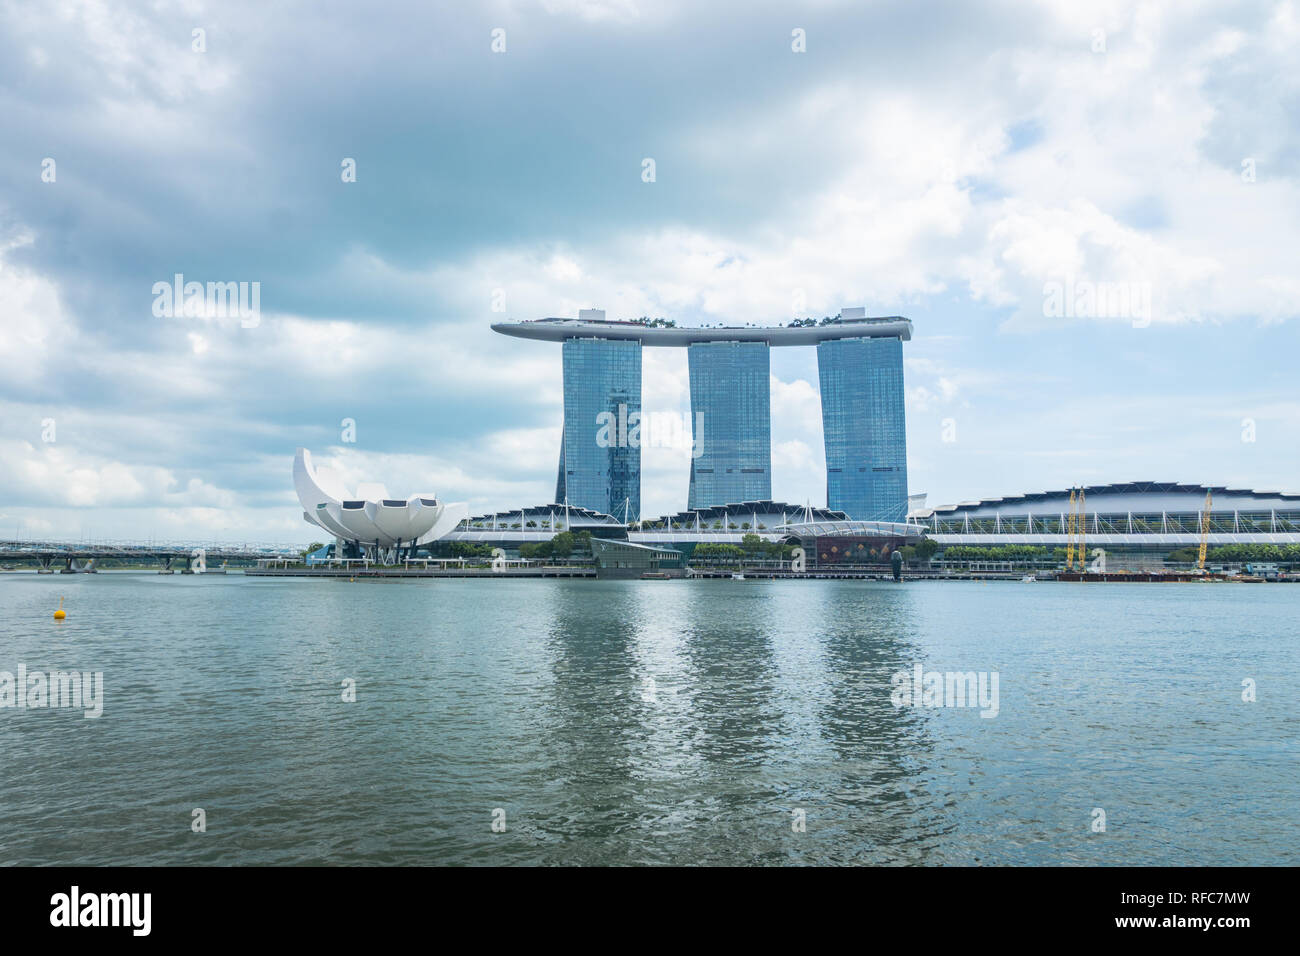 Singapur - Januar 2019: Singapur Wasserfront mit Blick auf Marina Bay Sands im Hintergrund. Singapur City Center ... Stockfoto